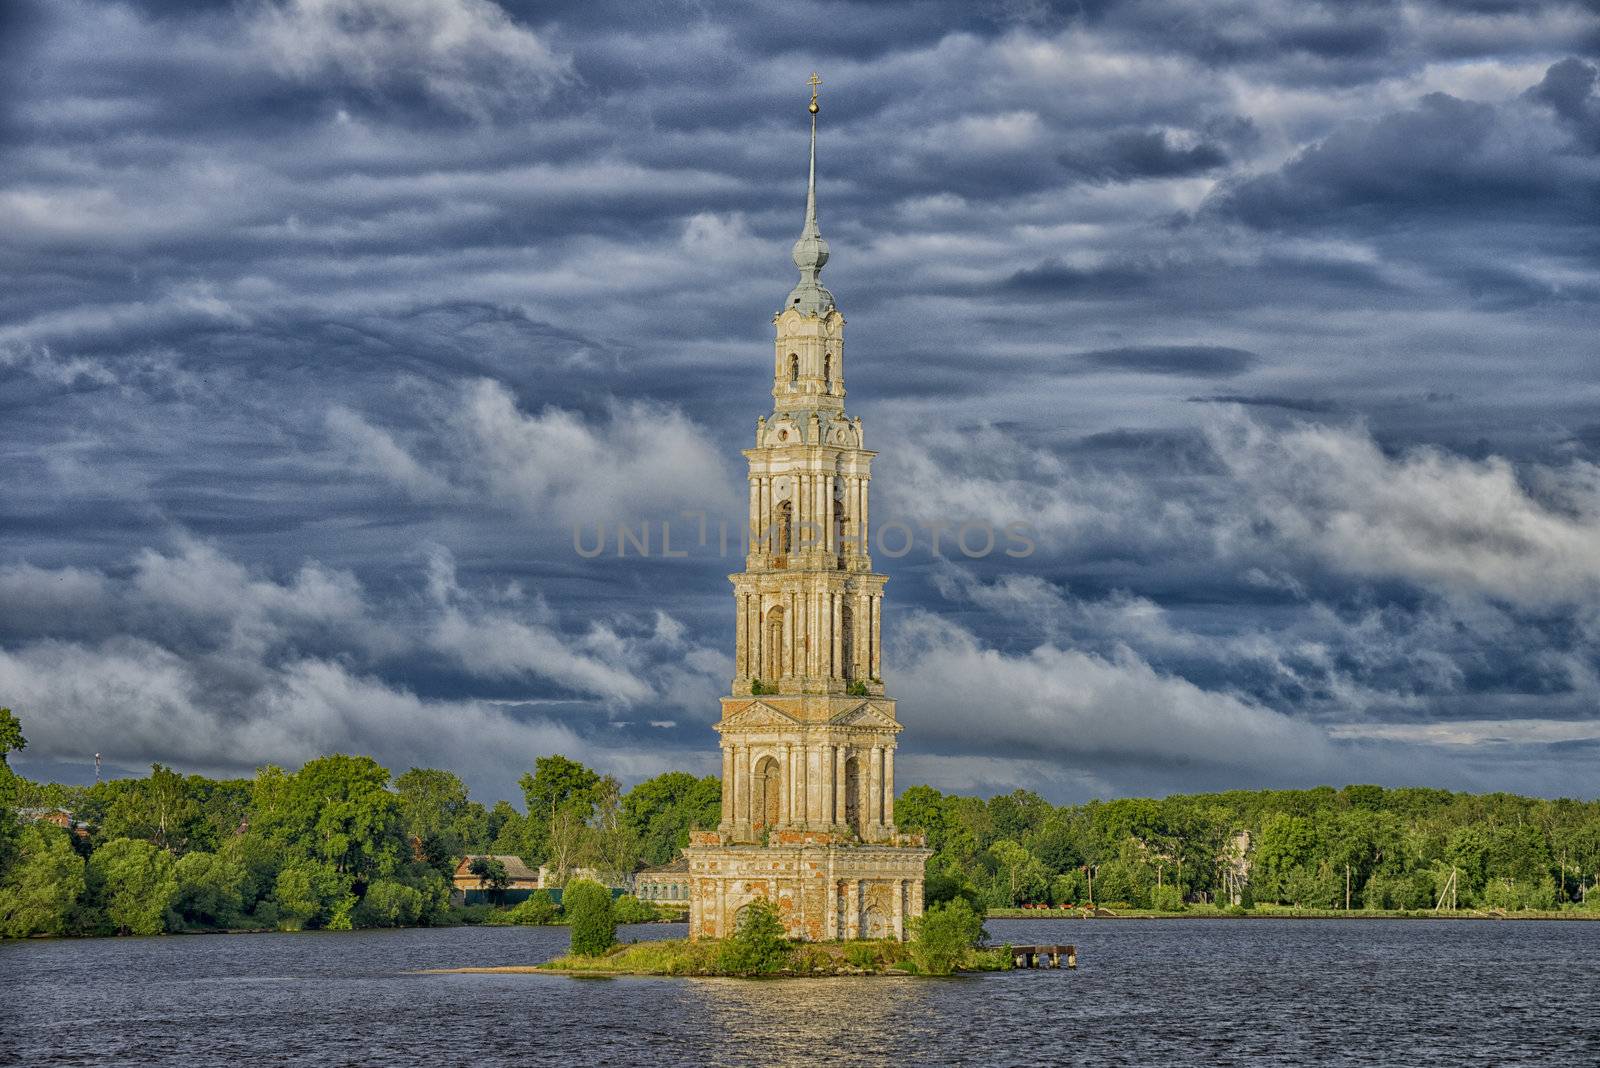 Church in water near of Kaljazin village in Moscow canal, Russia. Taken on July 2012.